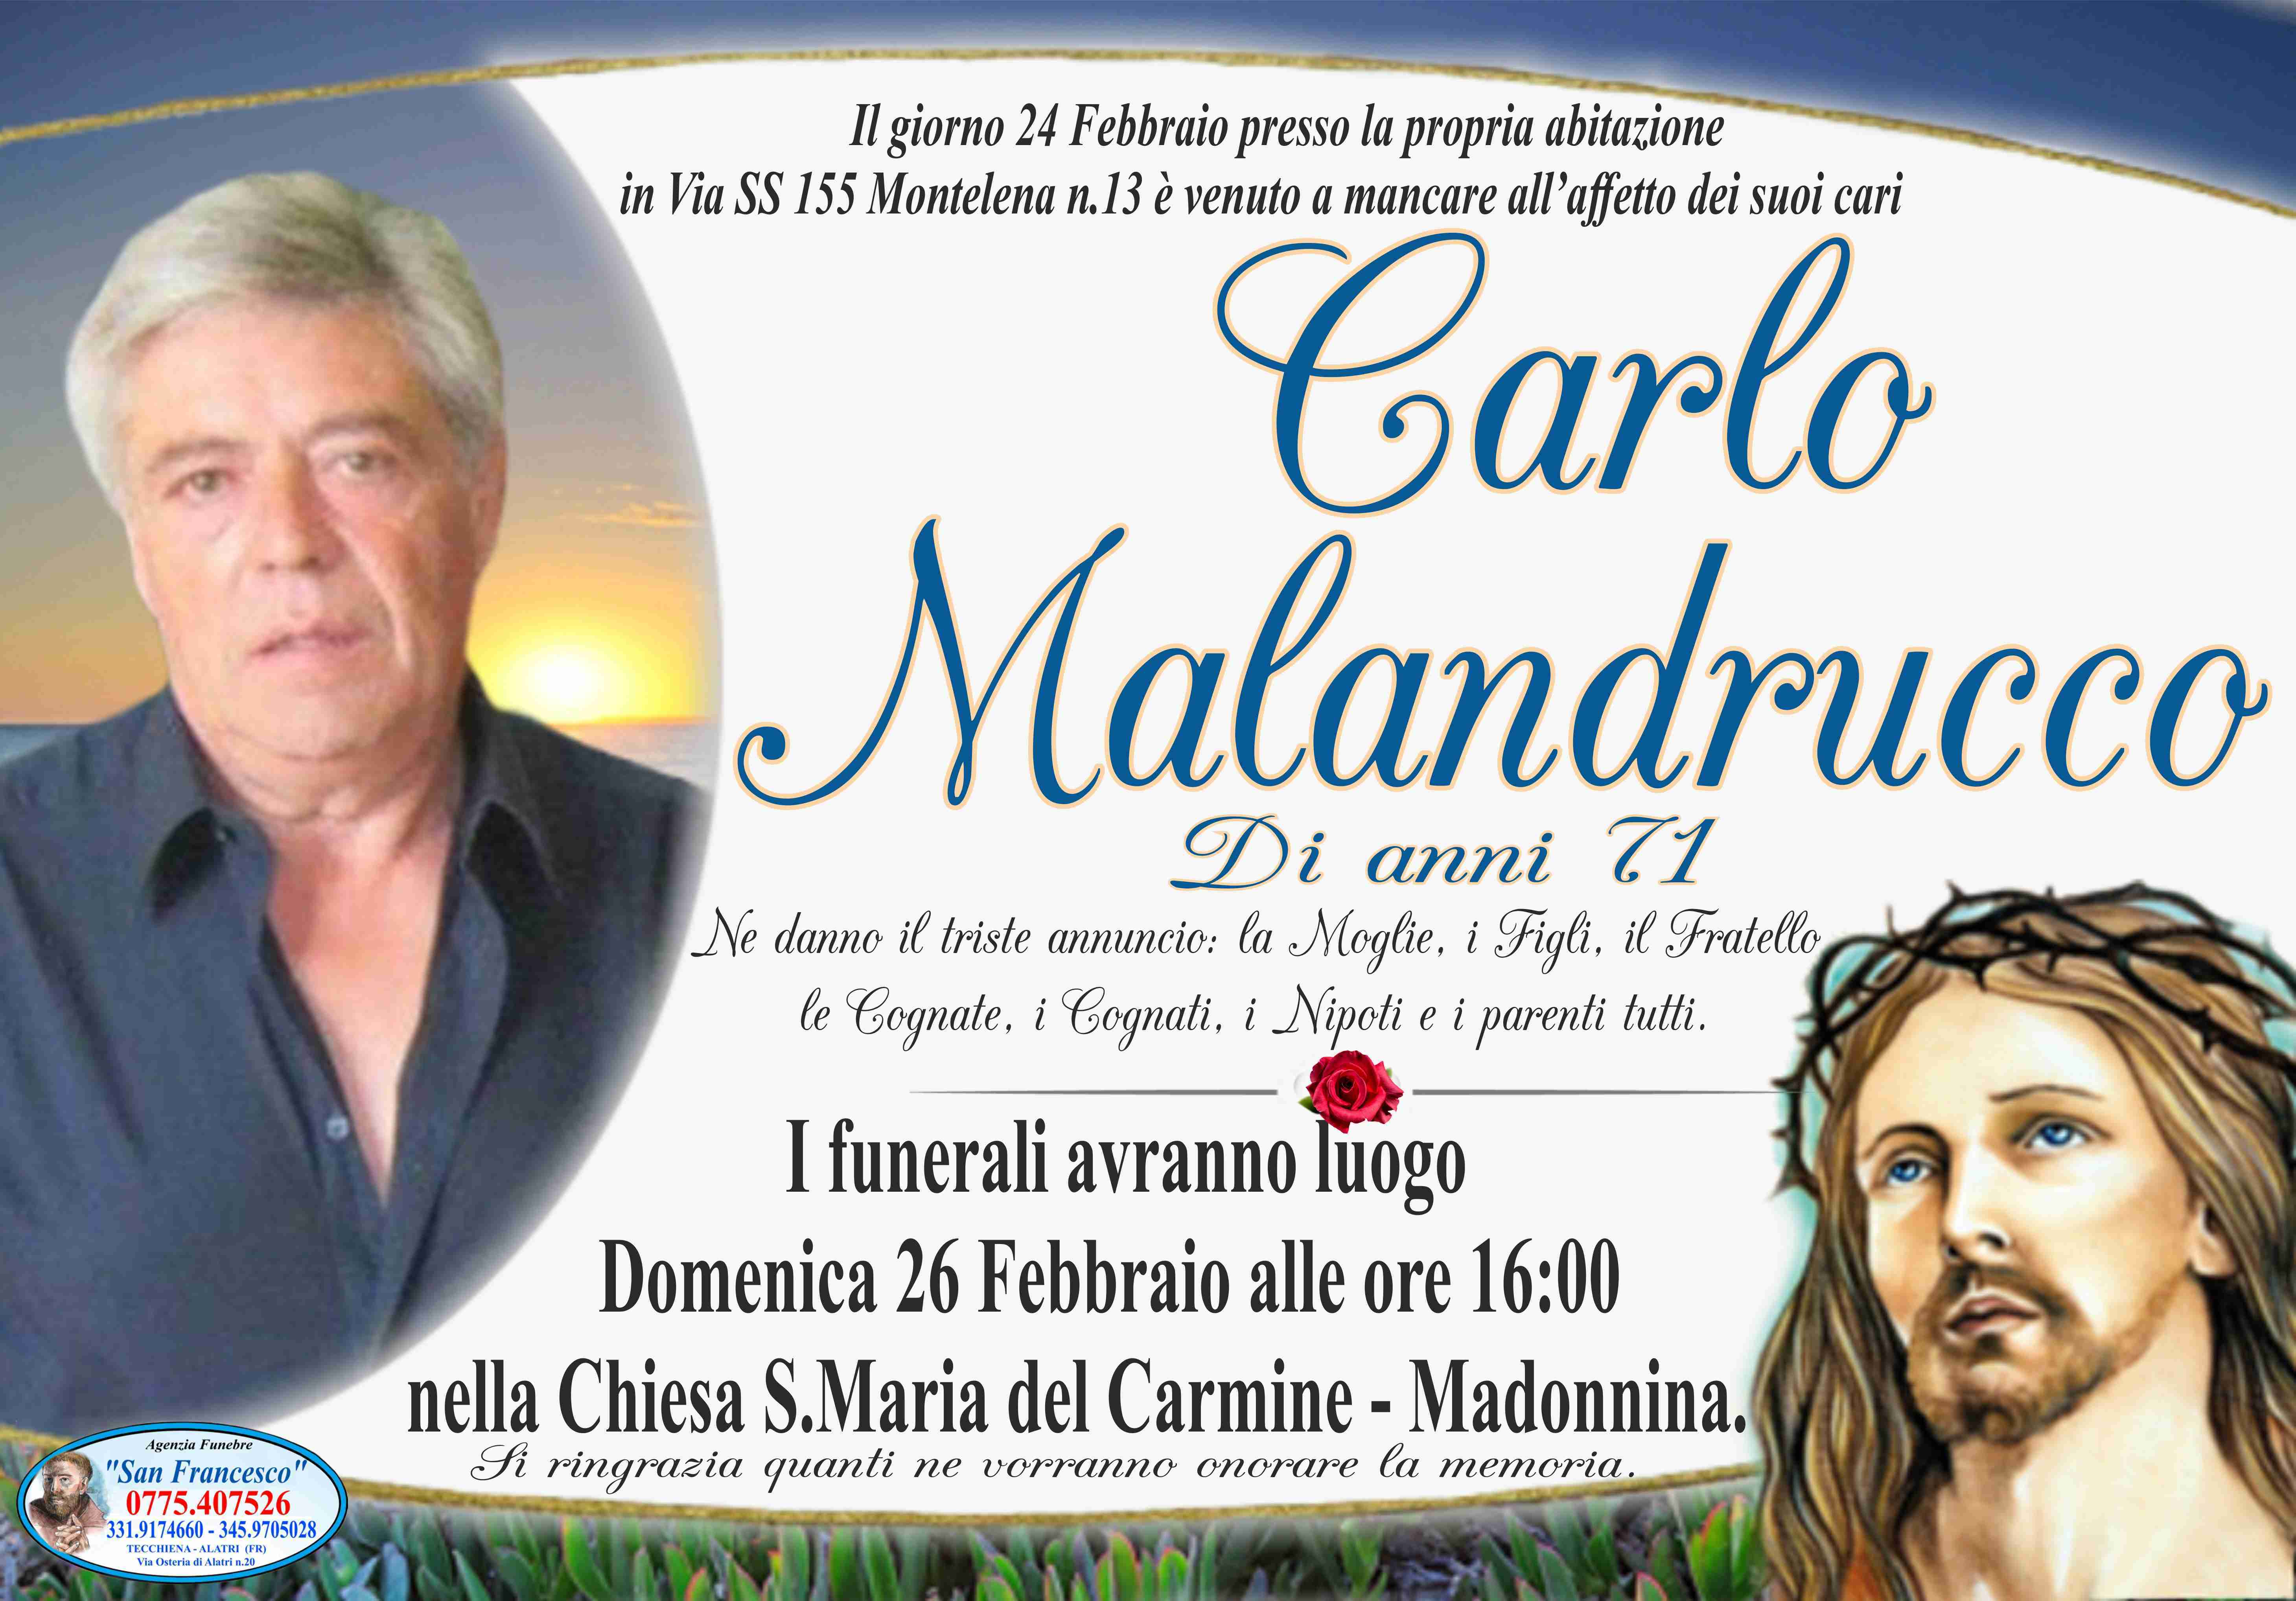 Carlo Malandrucco